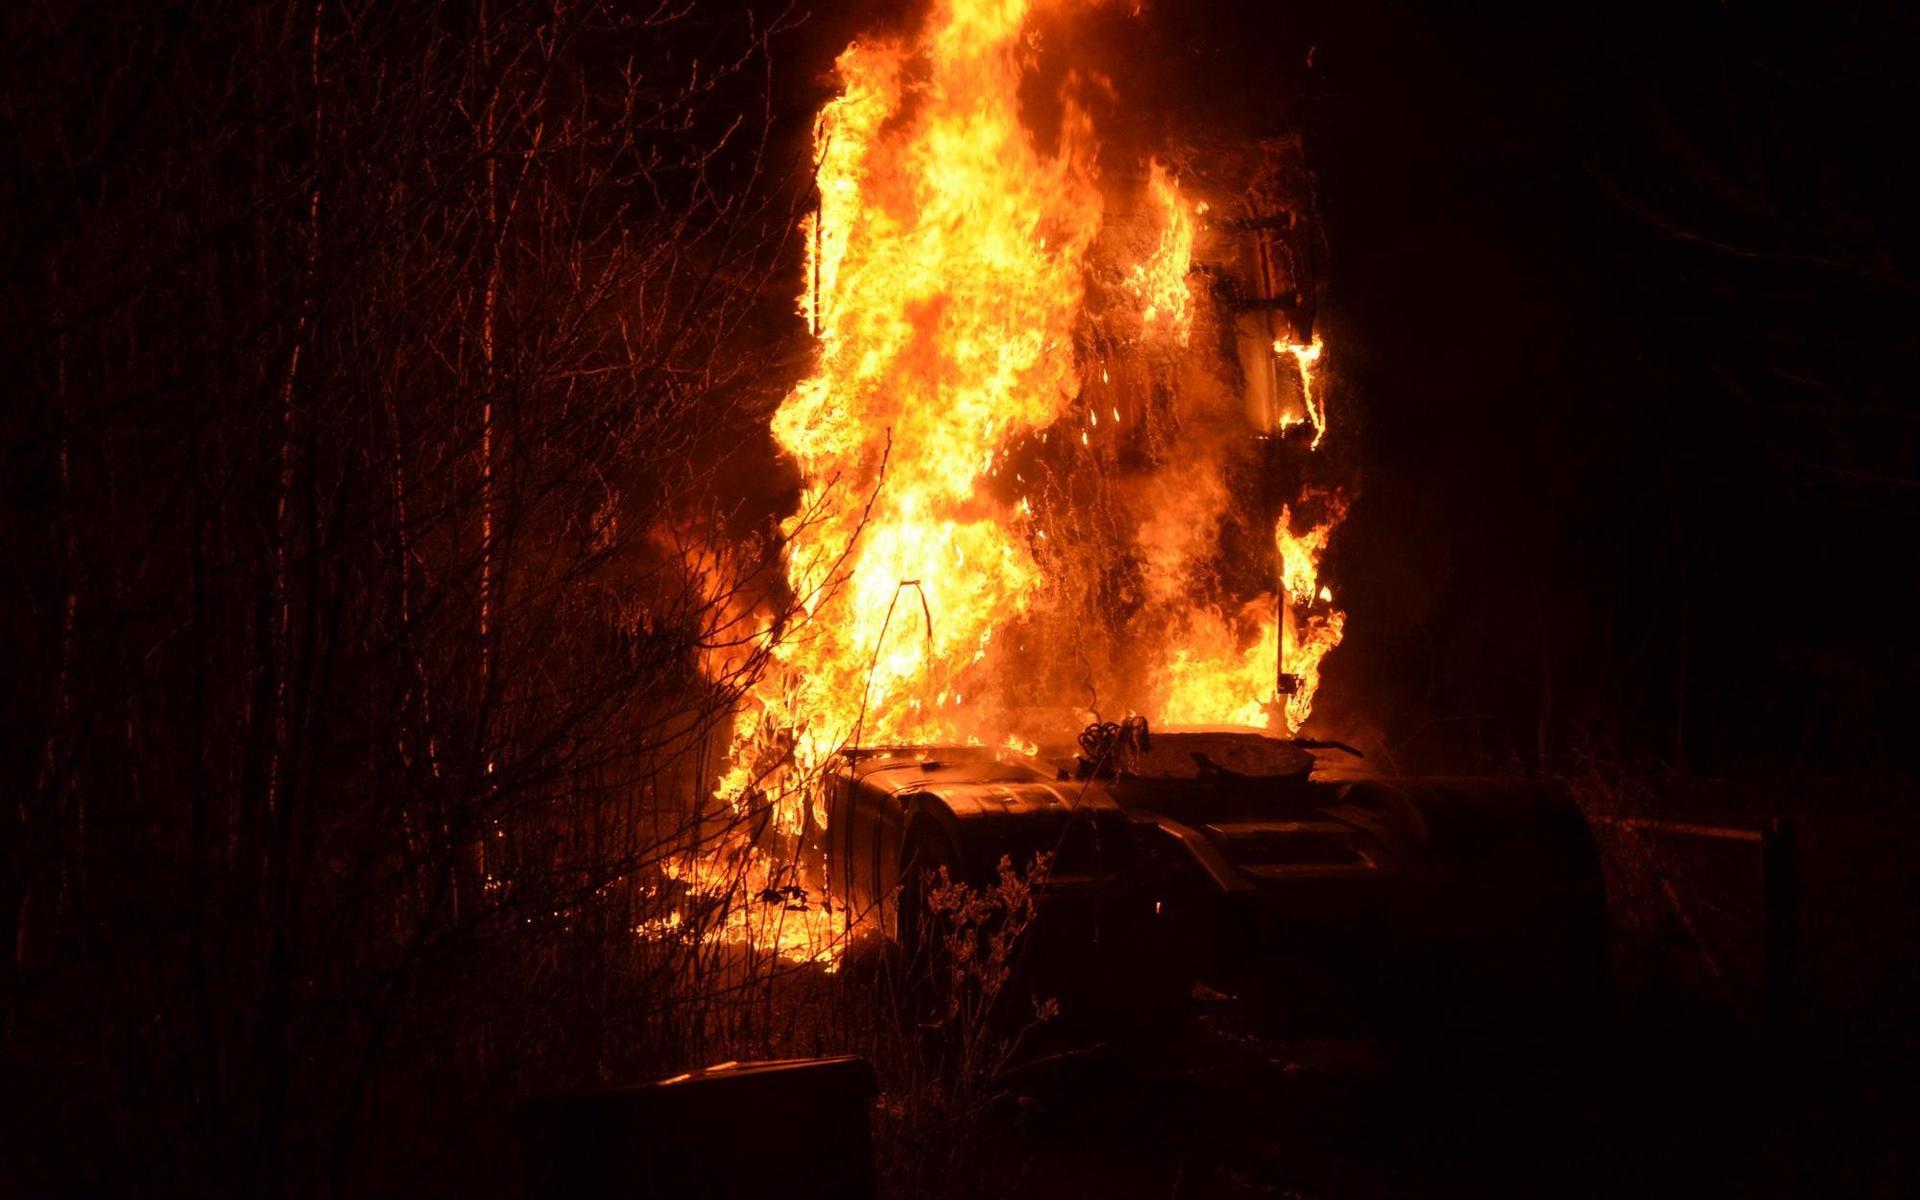 Fotografen Mikael Berglund var på plats redan innan räddningstjänsten och fick bilderna på den brinnande lastbilen.